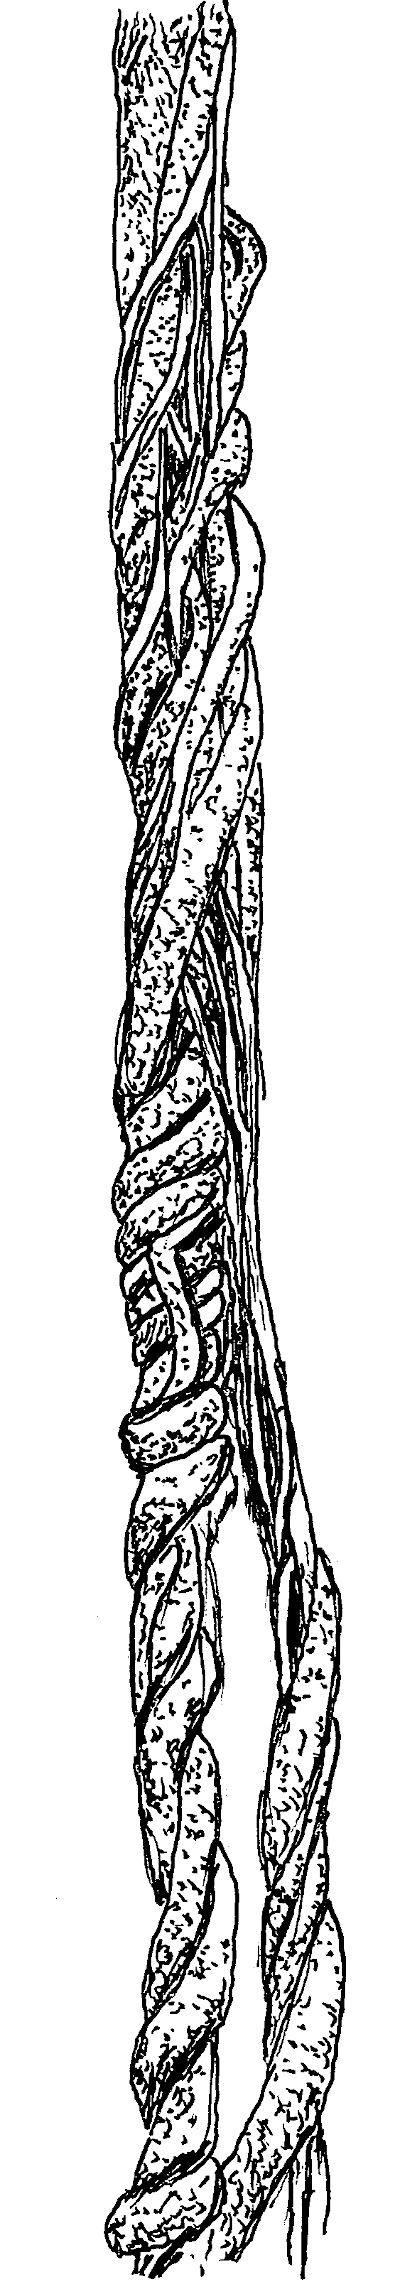 Sketch of Oriental Bittersweet (Celastrus orbiculatus) vines.